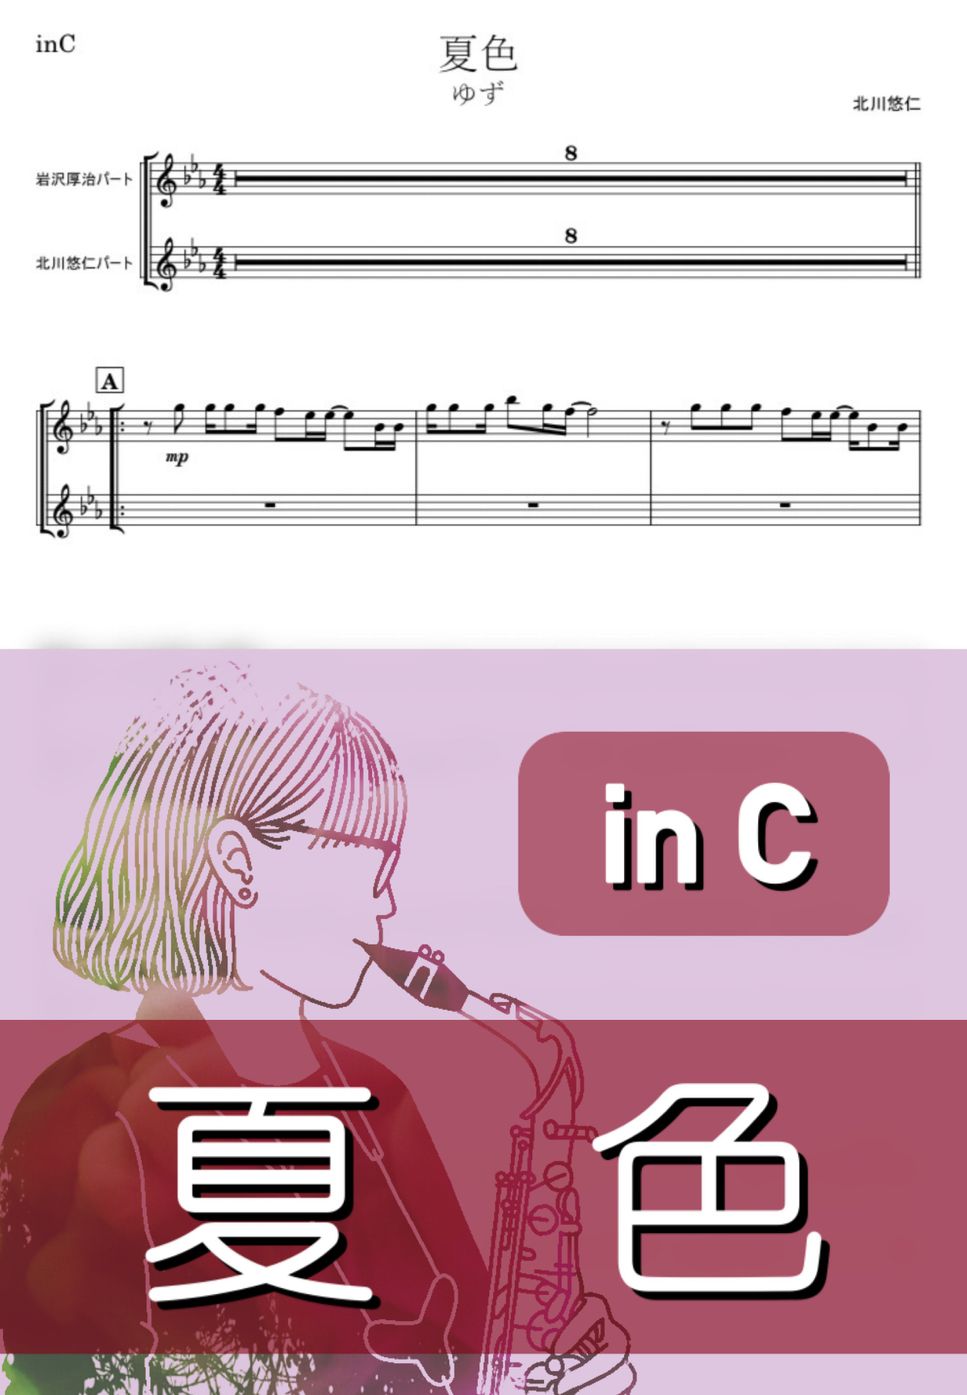 ゆず - 夏色 (C) by kanamusic